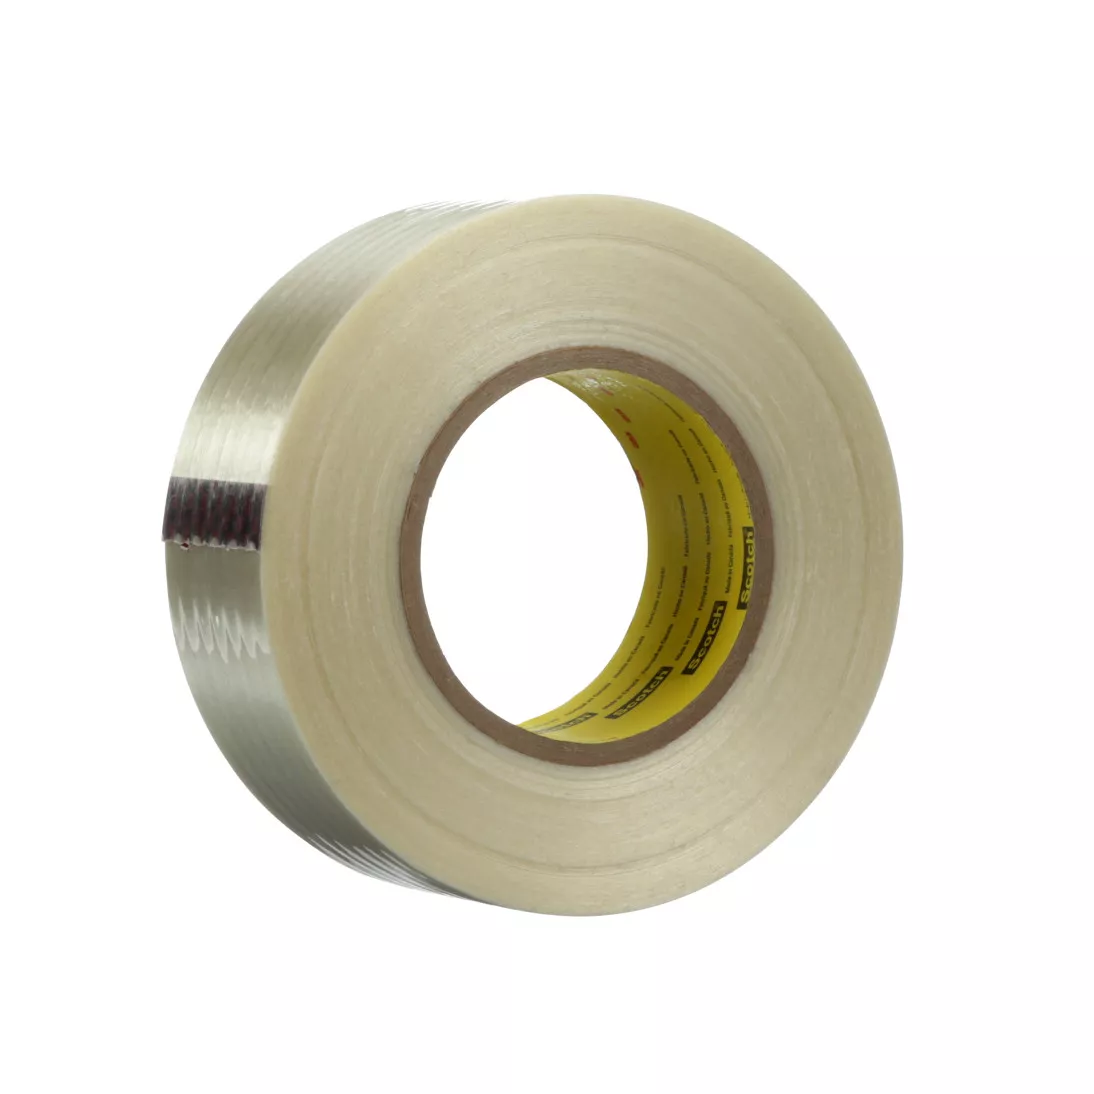 Scotch® Filament Tape 8809, Clear, 48 mm x 55 m, 7.7 mil, 24 rolls per
case